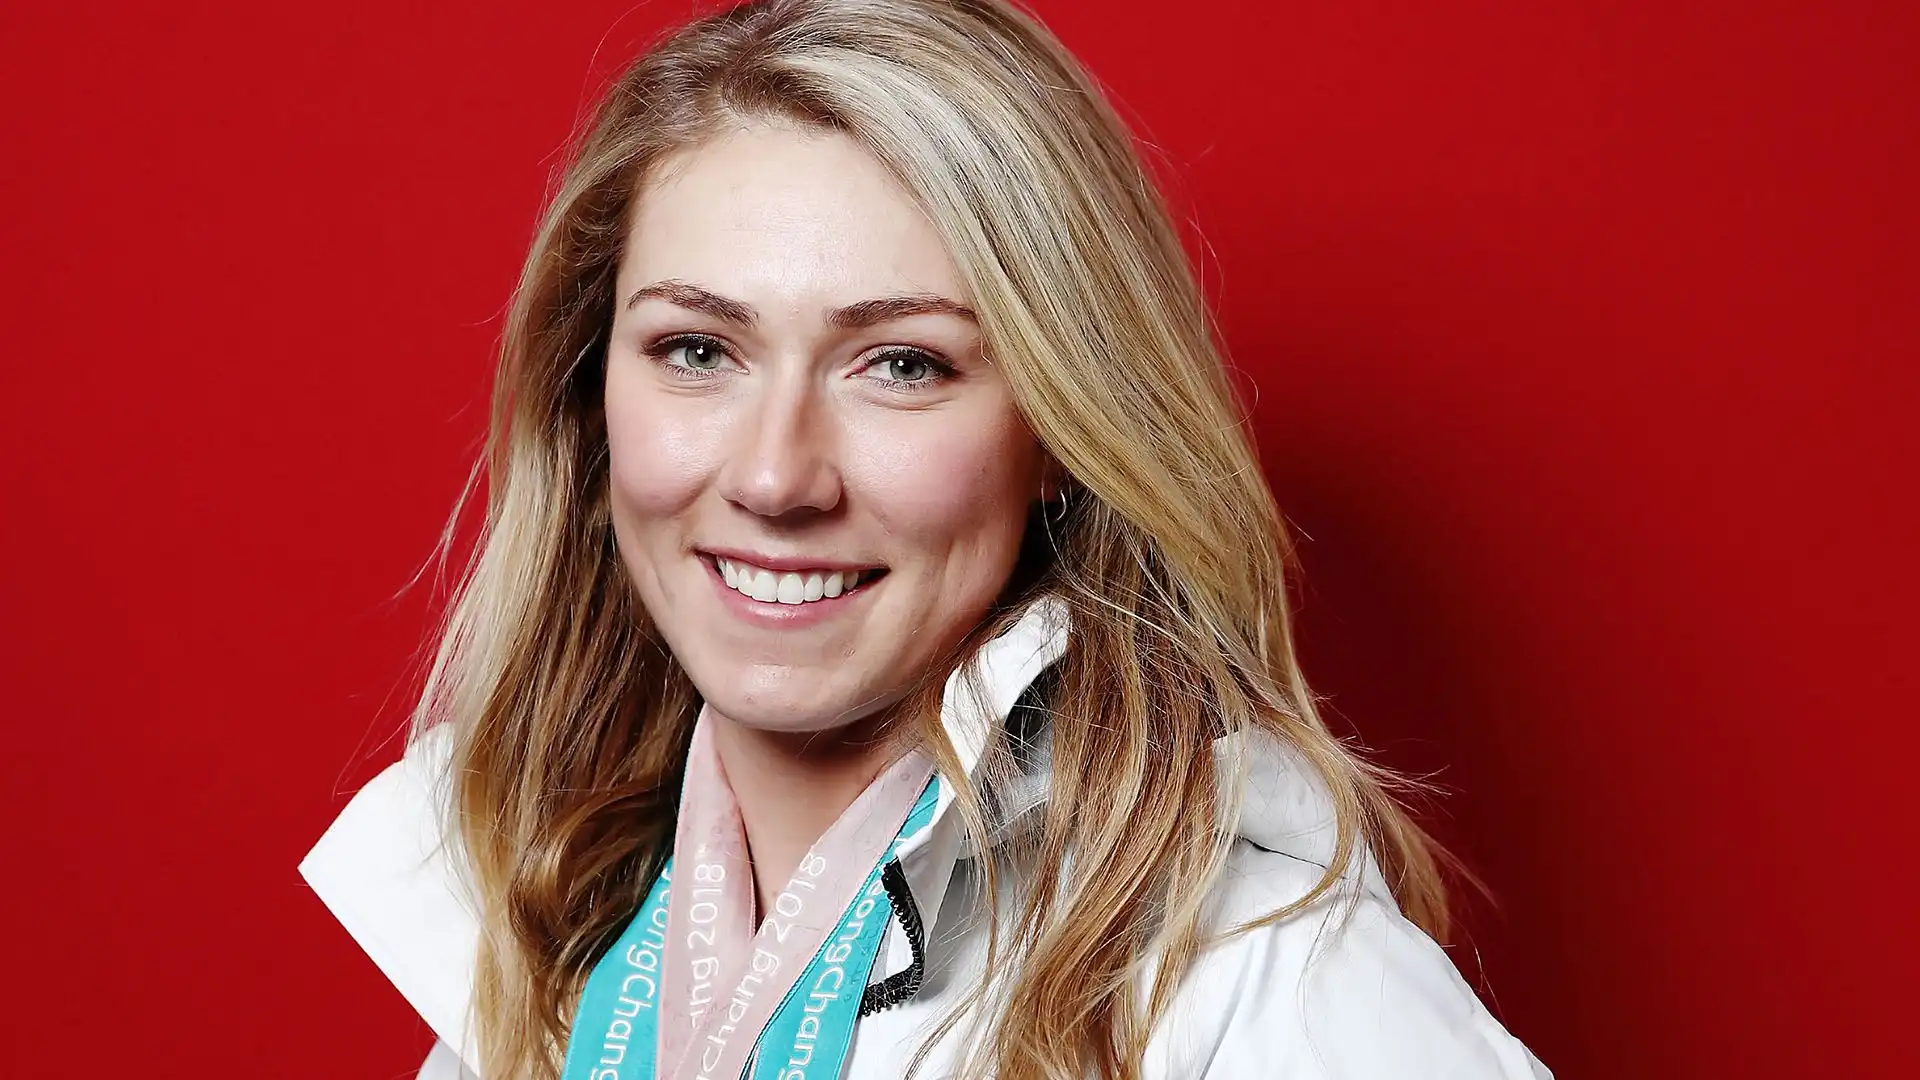 Mikaela Shiffrin (Stati Uniti): patrimonio stimato 3 milioni di dollari. La sciatrice più vincente di sempre